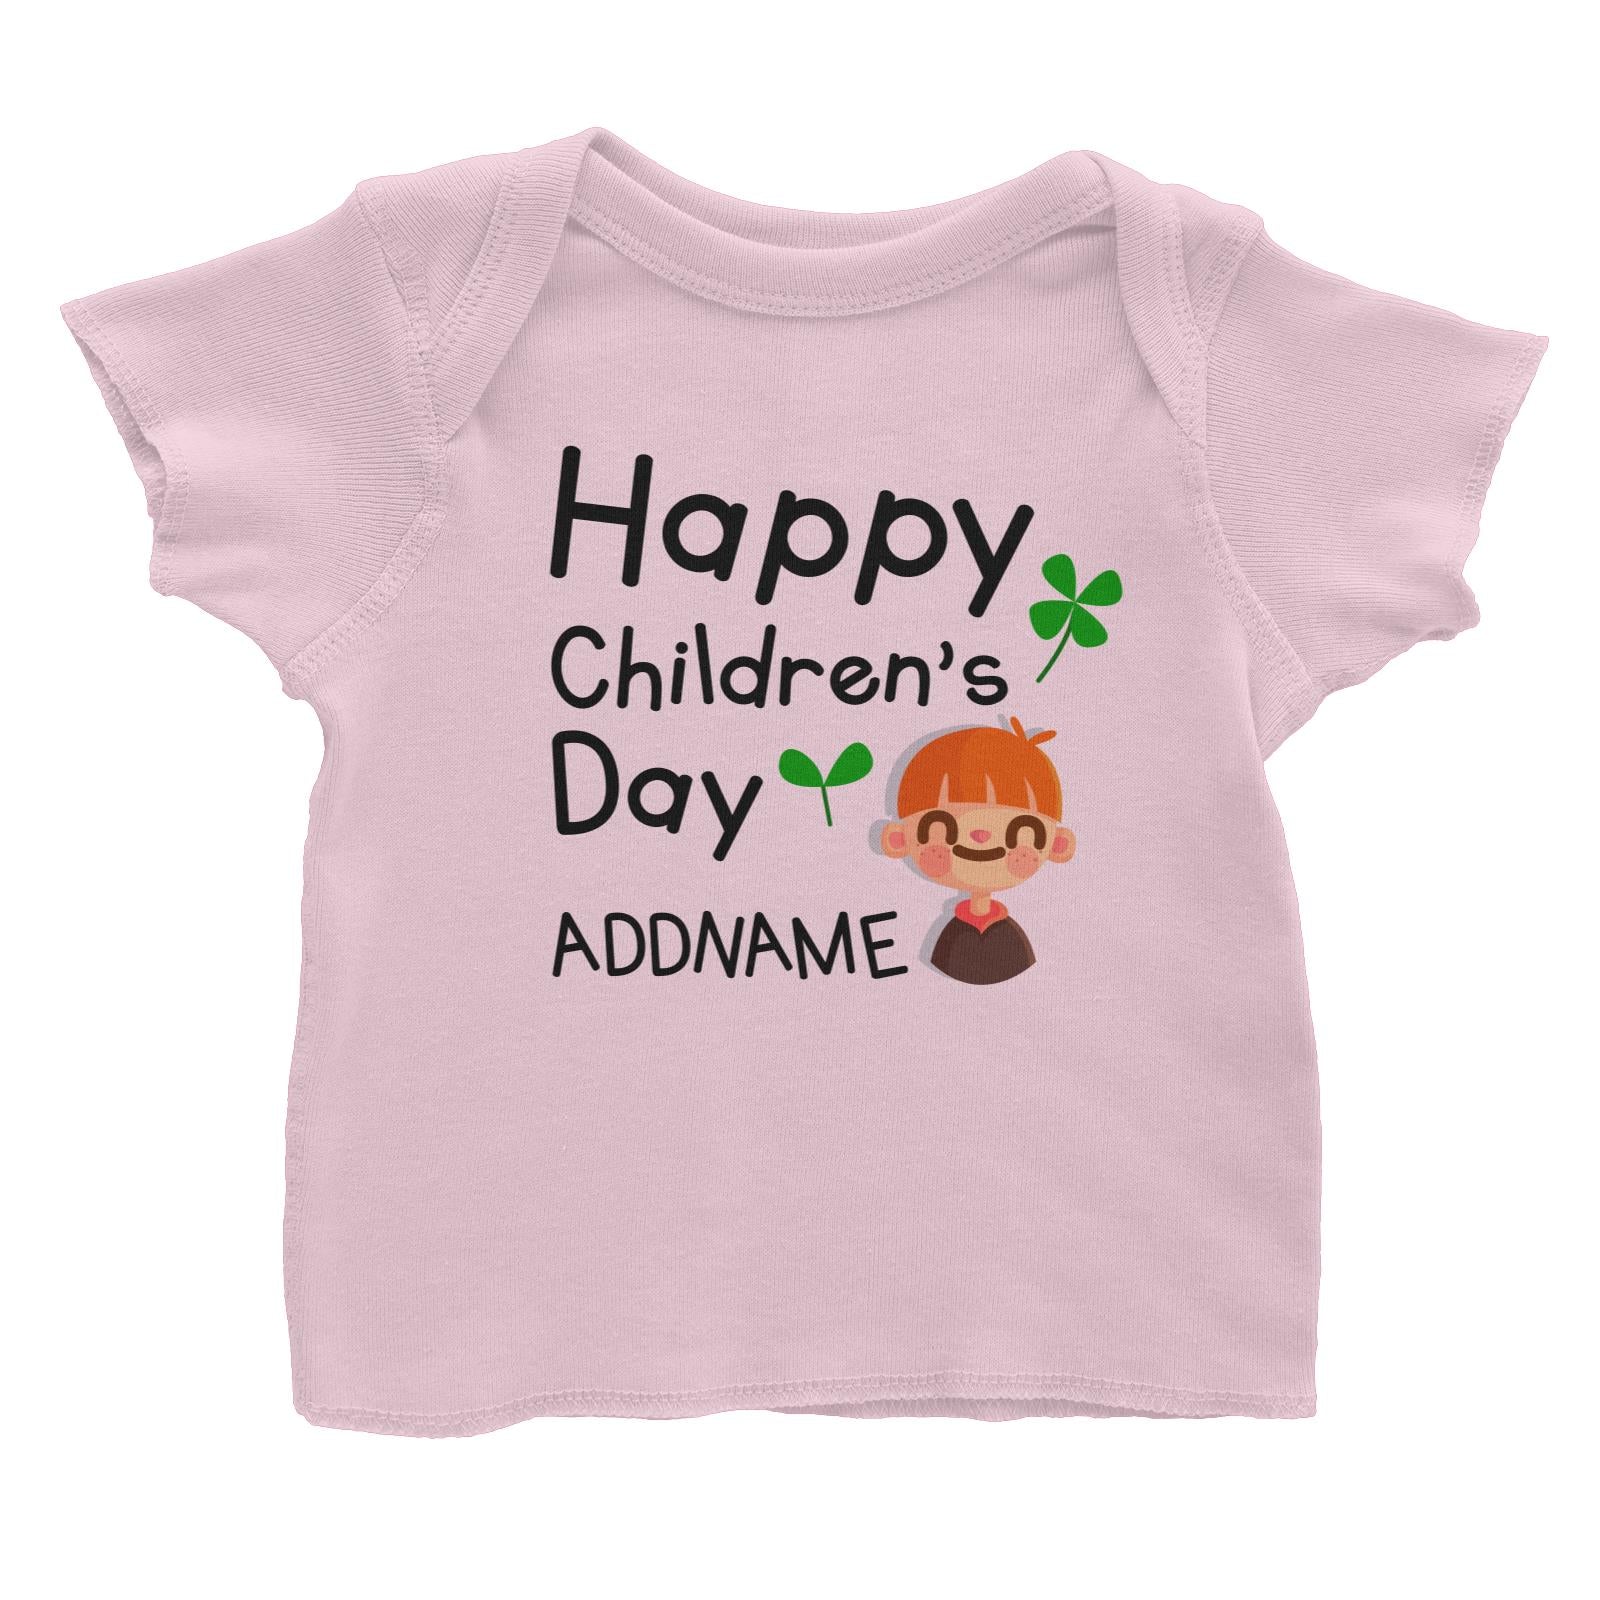 Children's Day Gift Series Happy Children's Day Cute Boy Addname Baby T-Shirt